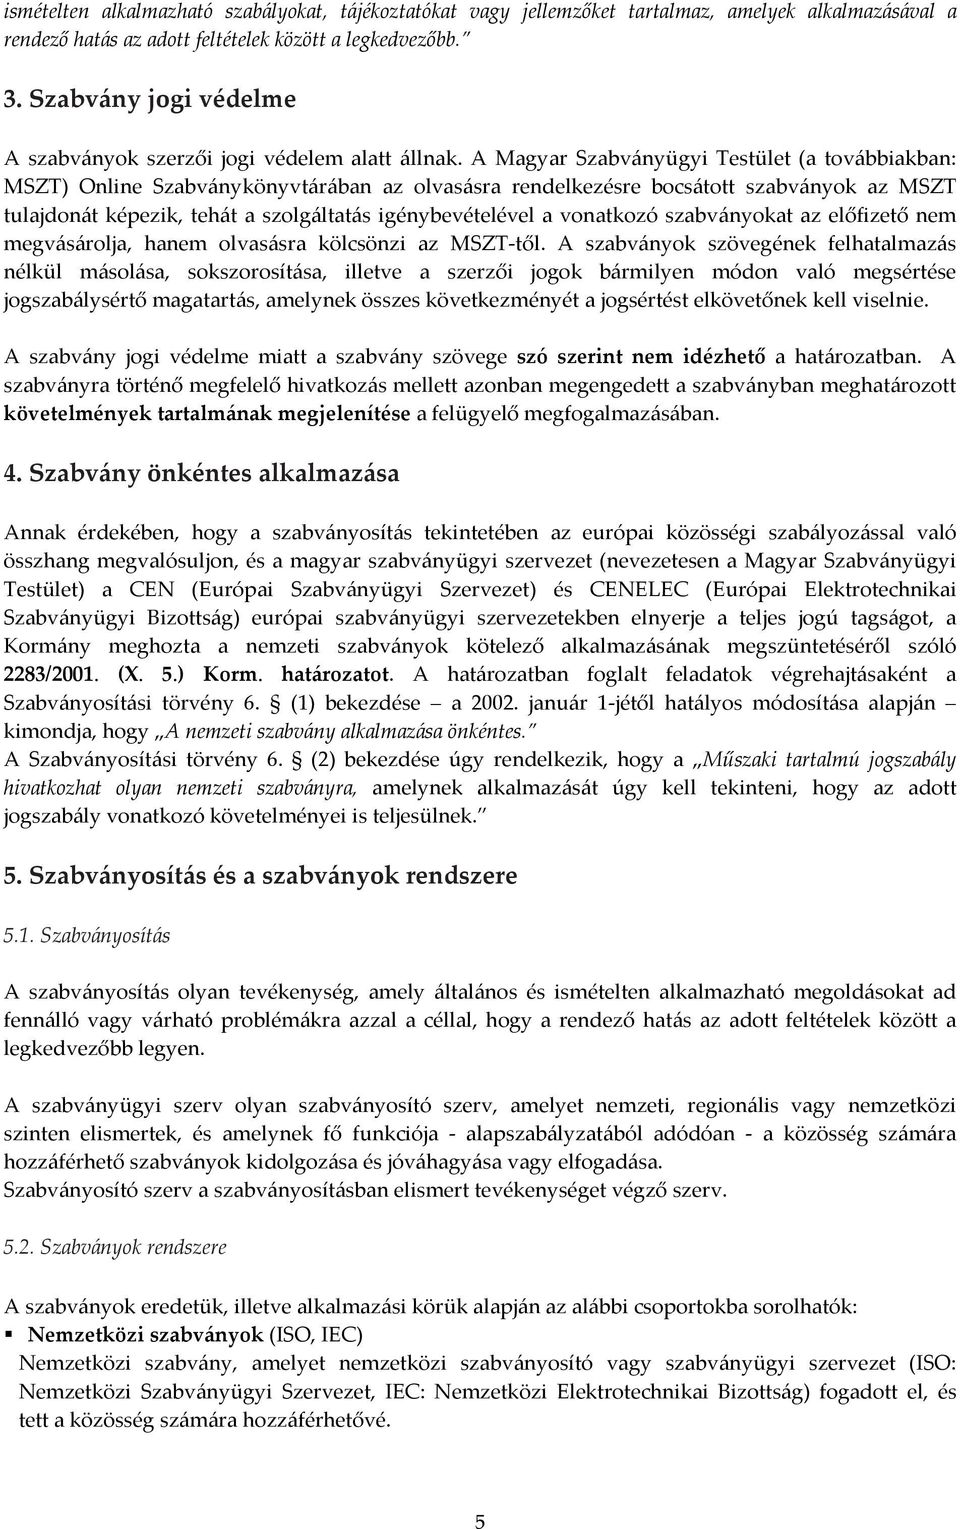 A Magyar Szabványügyi Testület (a továbbiakban: MSZT) Online Szabványkönyvtárában az olvasásra rendelkezésre bocsátott szabványok az MSZT tulajdonát képezik, tehát a szolgáltatás igénybevételével a